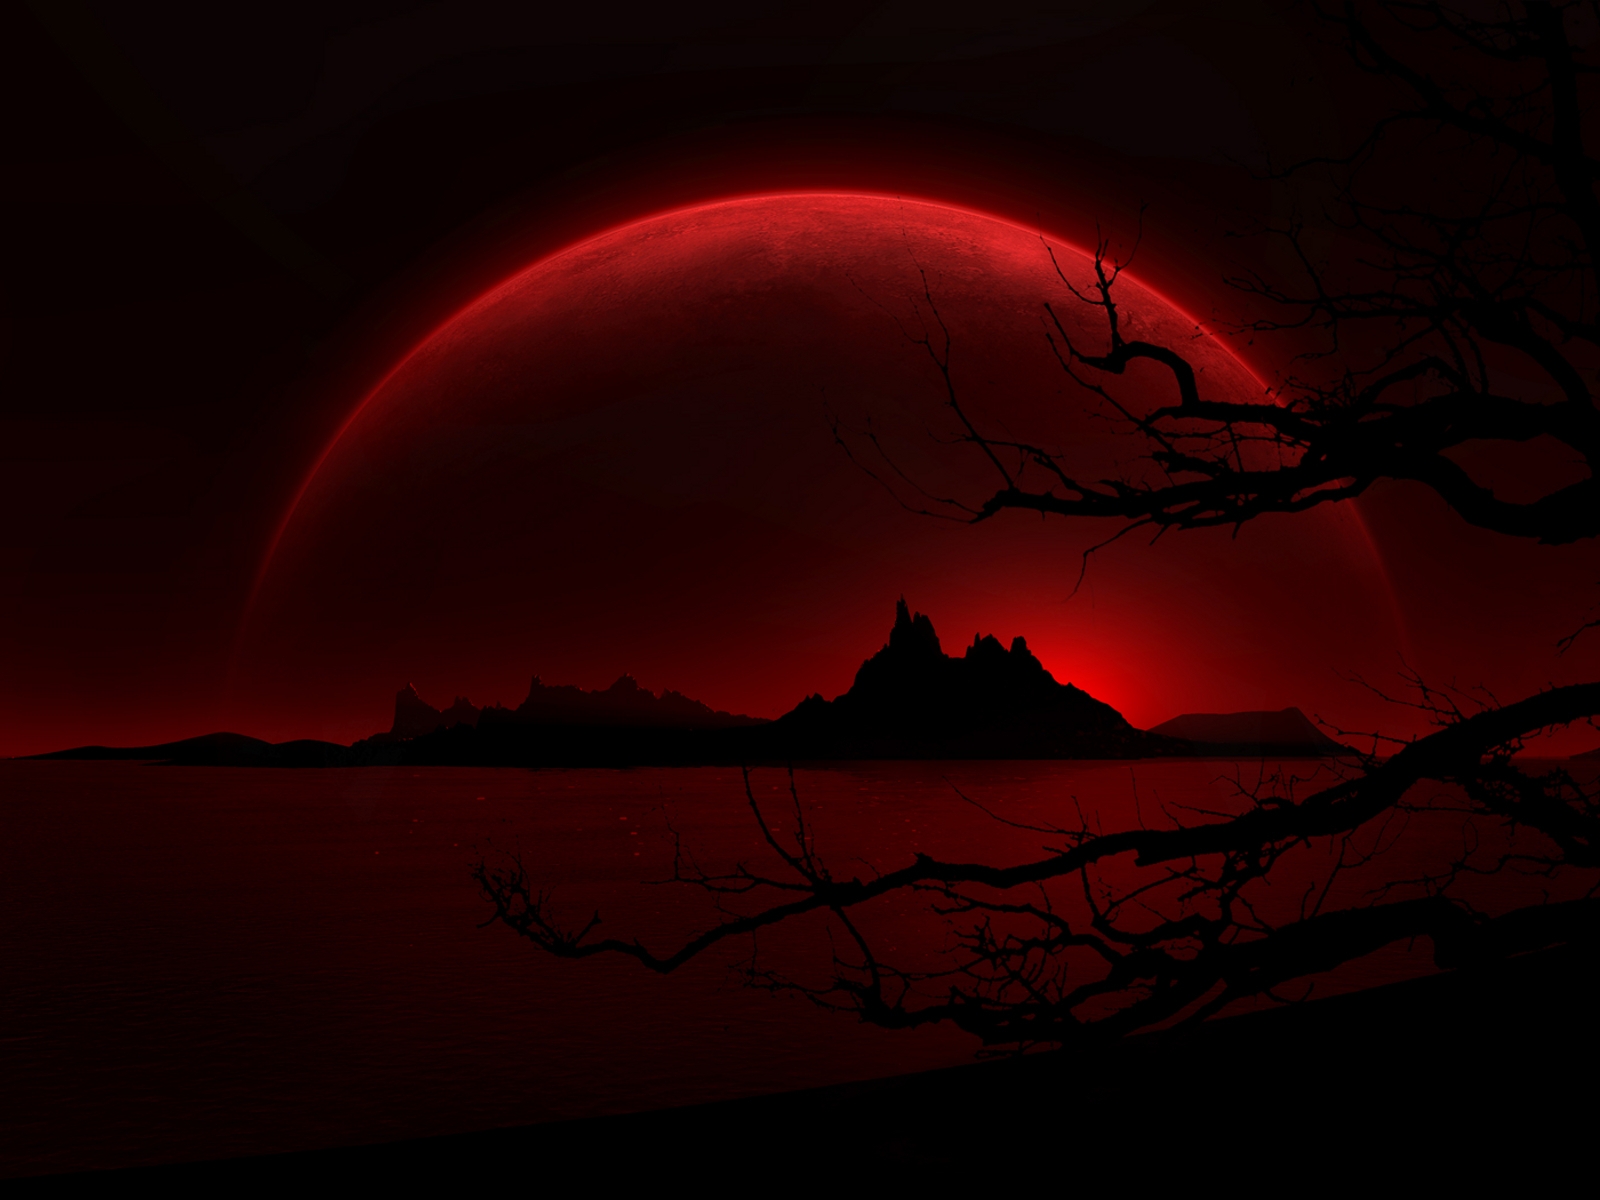 Dark Red Night for 1600 x 1200 resolution